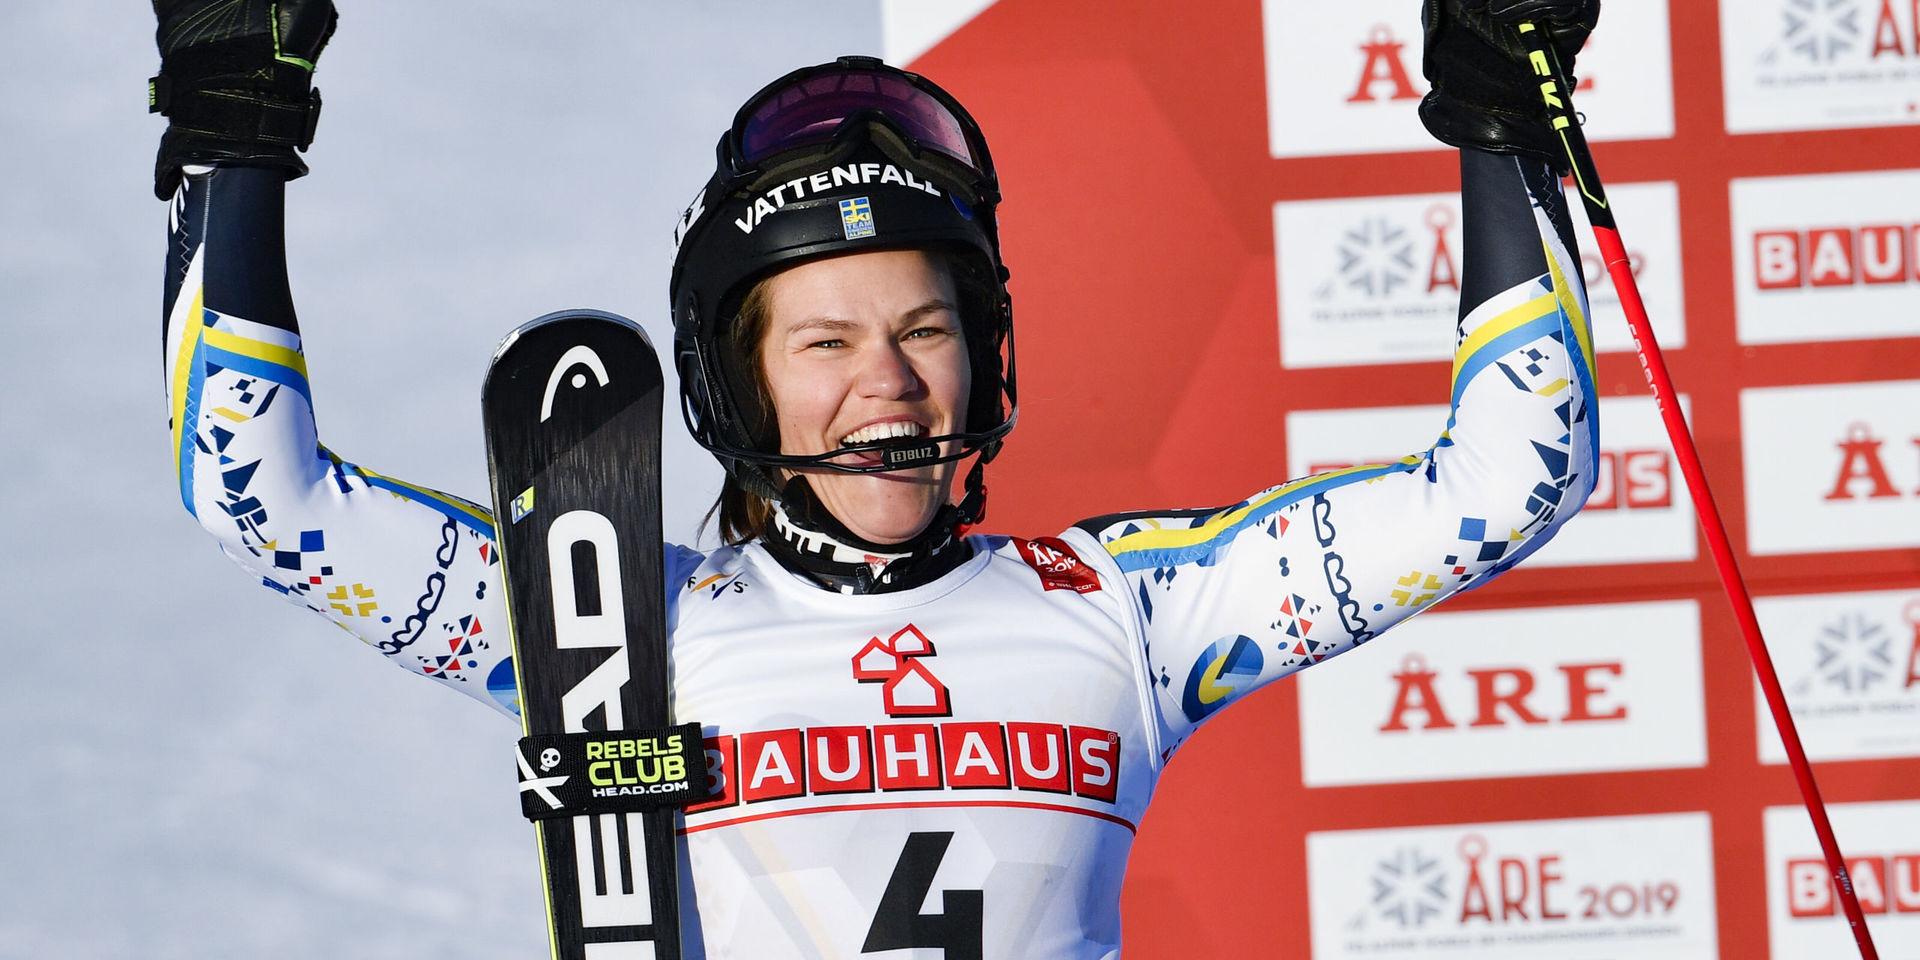 Anna Swenn Larsson tog VM-silver i Åre i vintras, endast slagen av Mikaela Shiffrin. Den här säsongen hoppas hon kunna ge amerikanskan en match. Arkivbild.